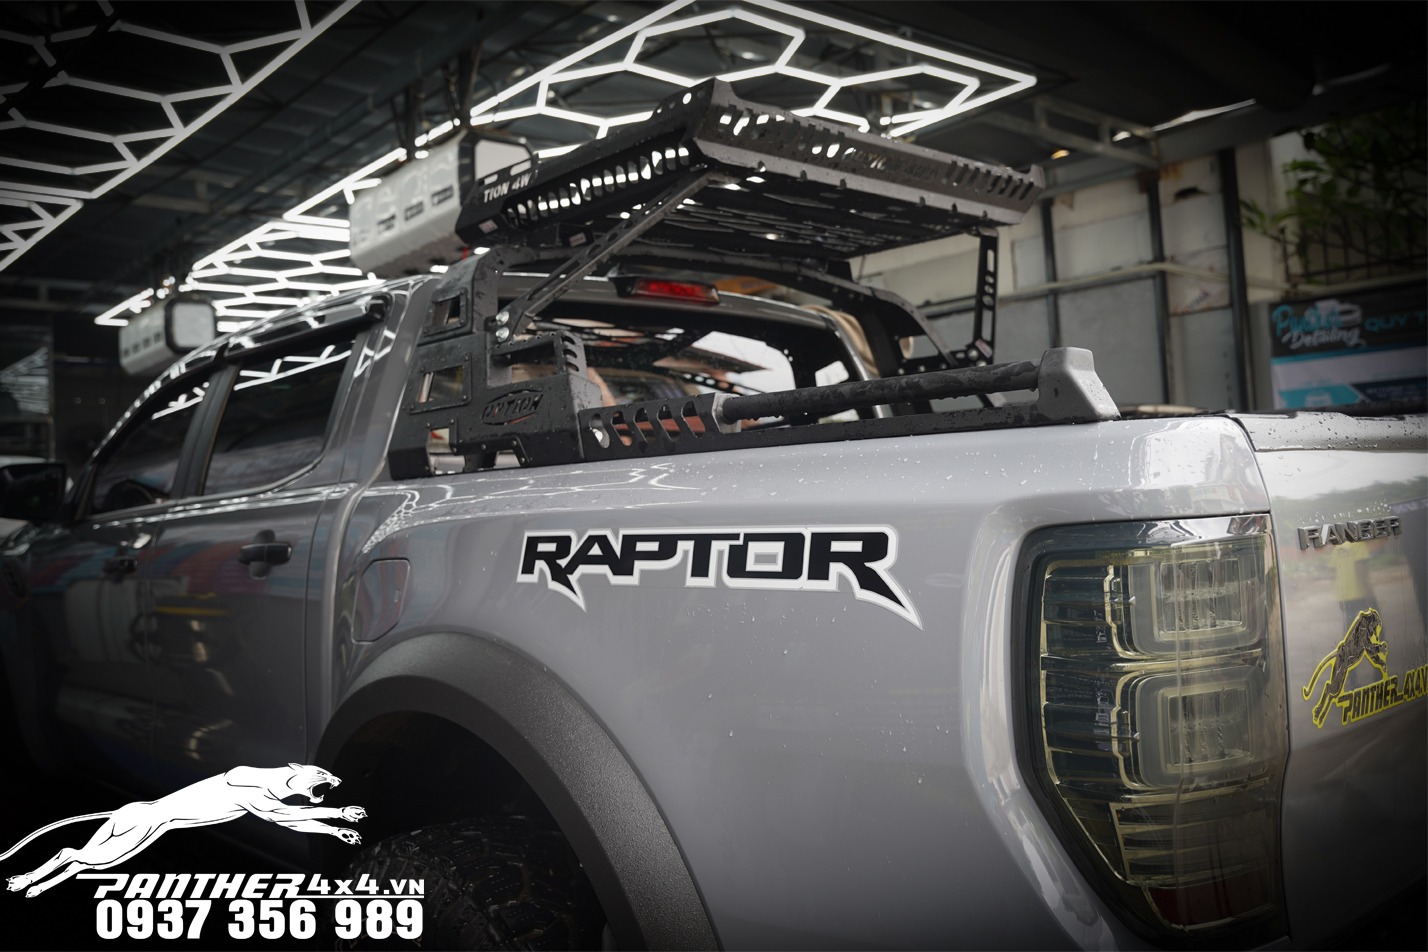 Nắp cuộn xe bán tải Raptor SportsX4 là sản phẩm mang thương hiệu Sports với một phiên bản nhiều ưu điểm nổi bậc, quý khách hàng sẽ không khỏi thích thú khi được trải nghiệm sản phẩm này.